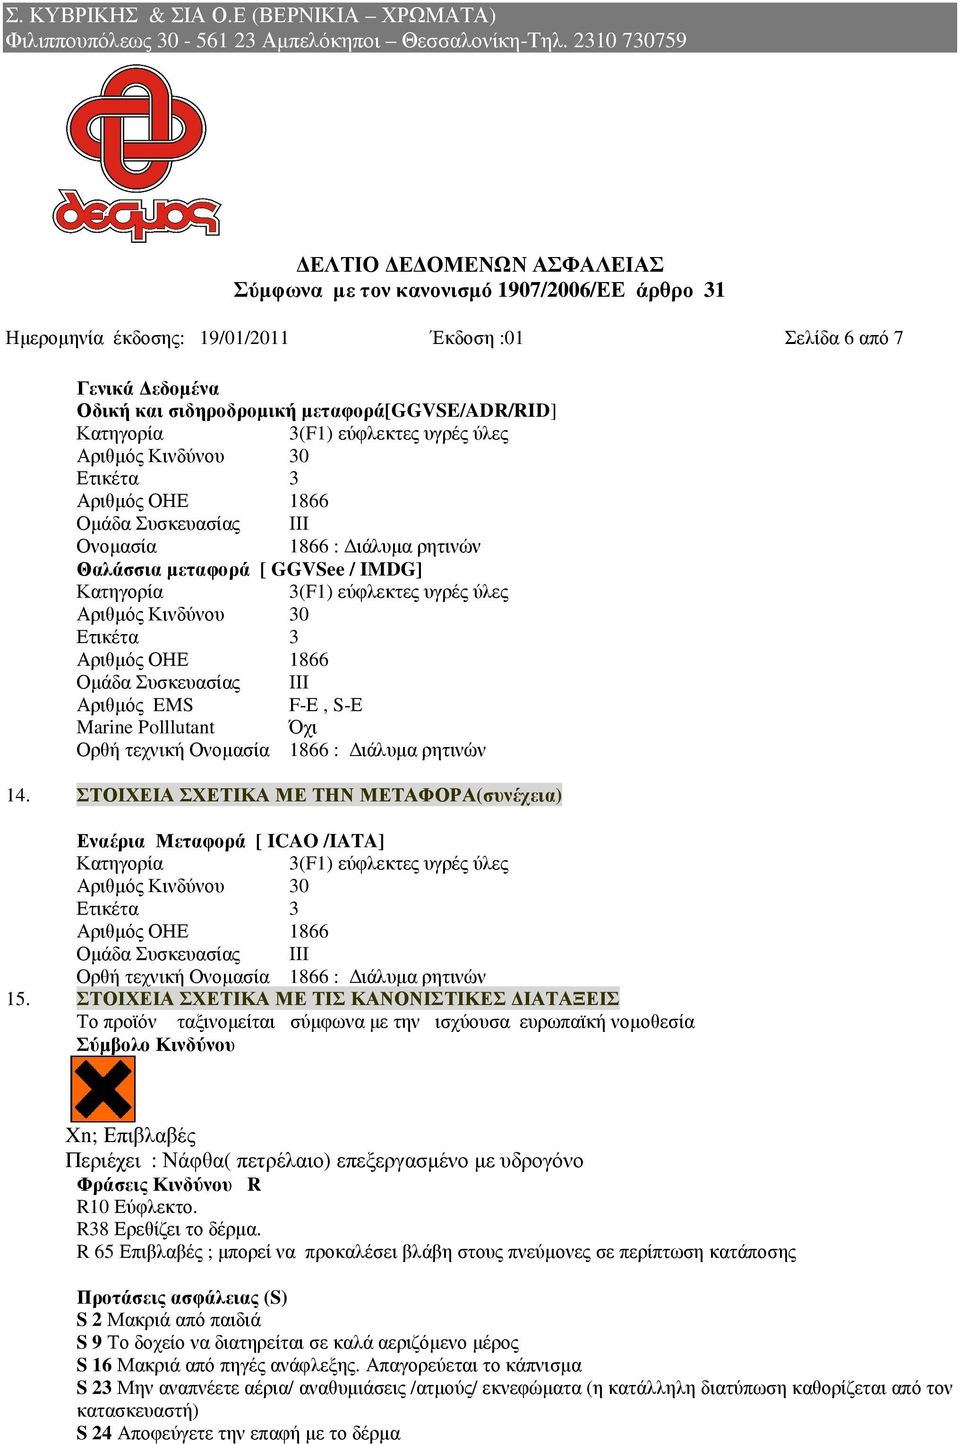 Αριθµός EMS F-Ε, S-Ε Marine Polllutant Όχι Ορθή τεχνική Ονοµασία 1866 : ιάλυµα ρητινών 14.